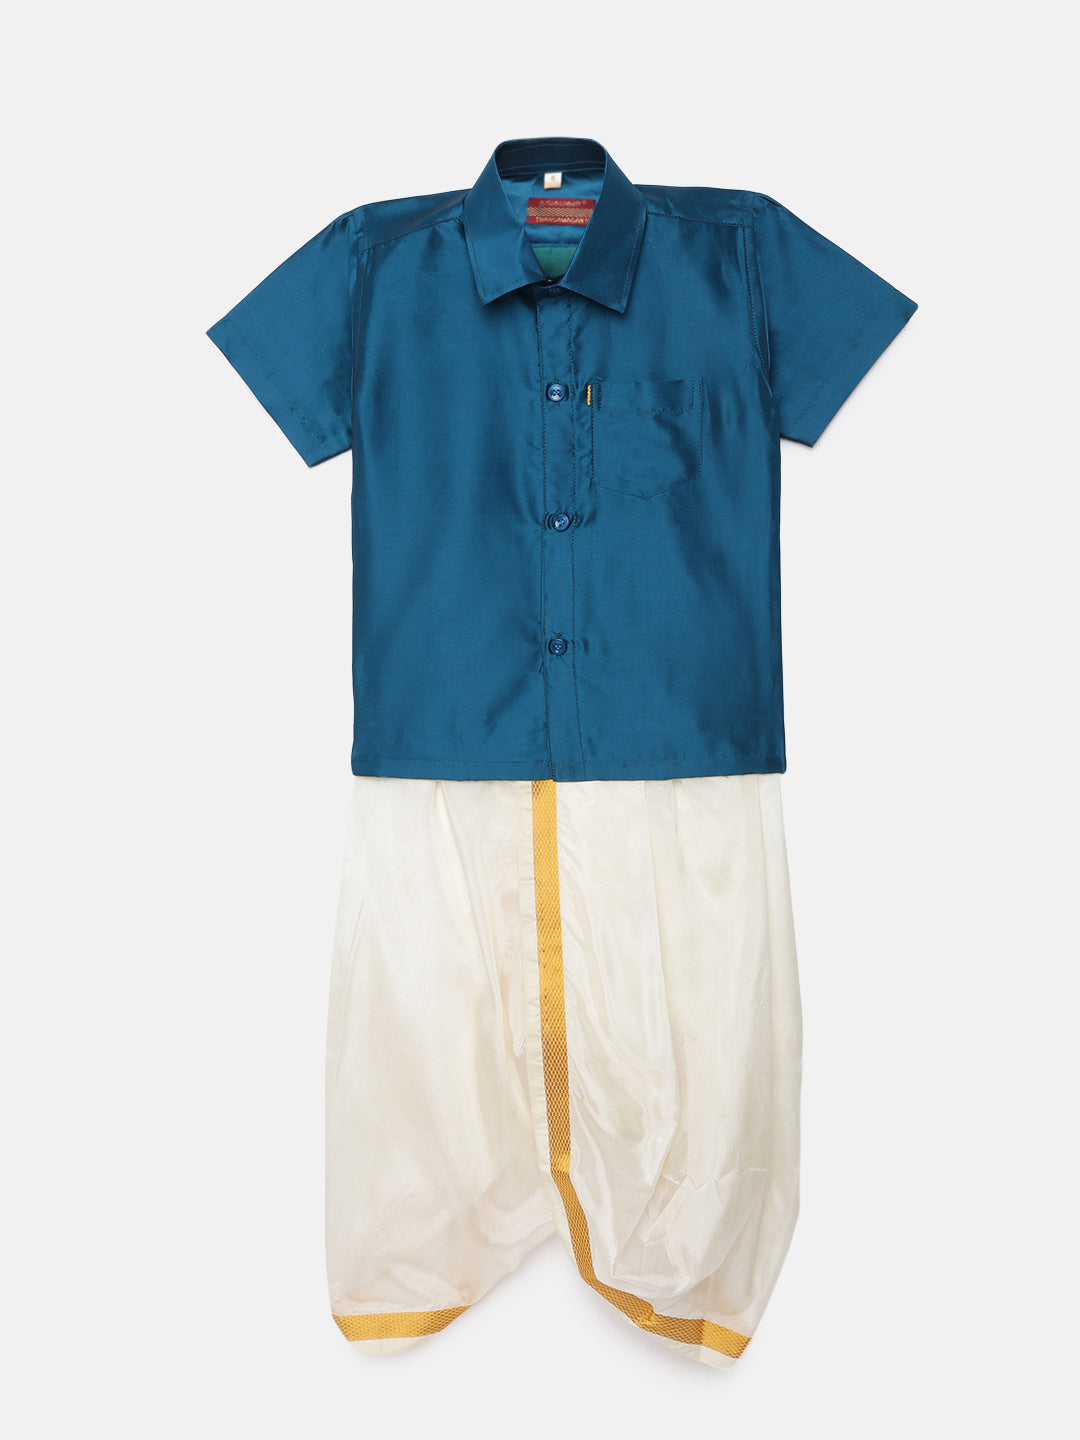 19. Boys Panjagajam & Shirt Set